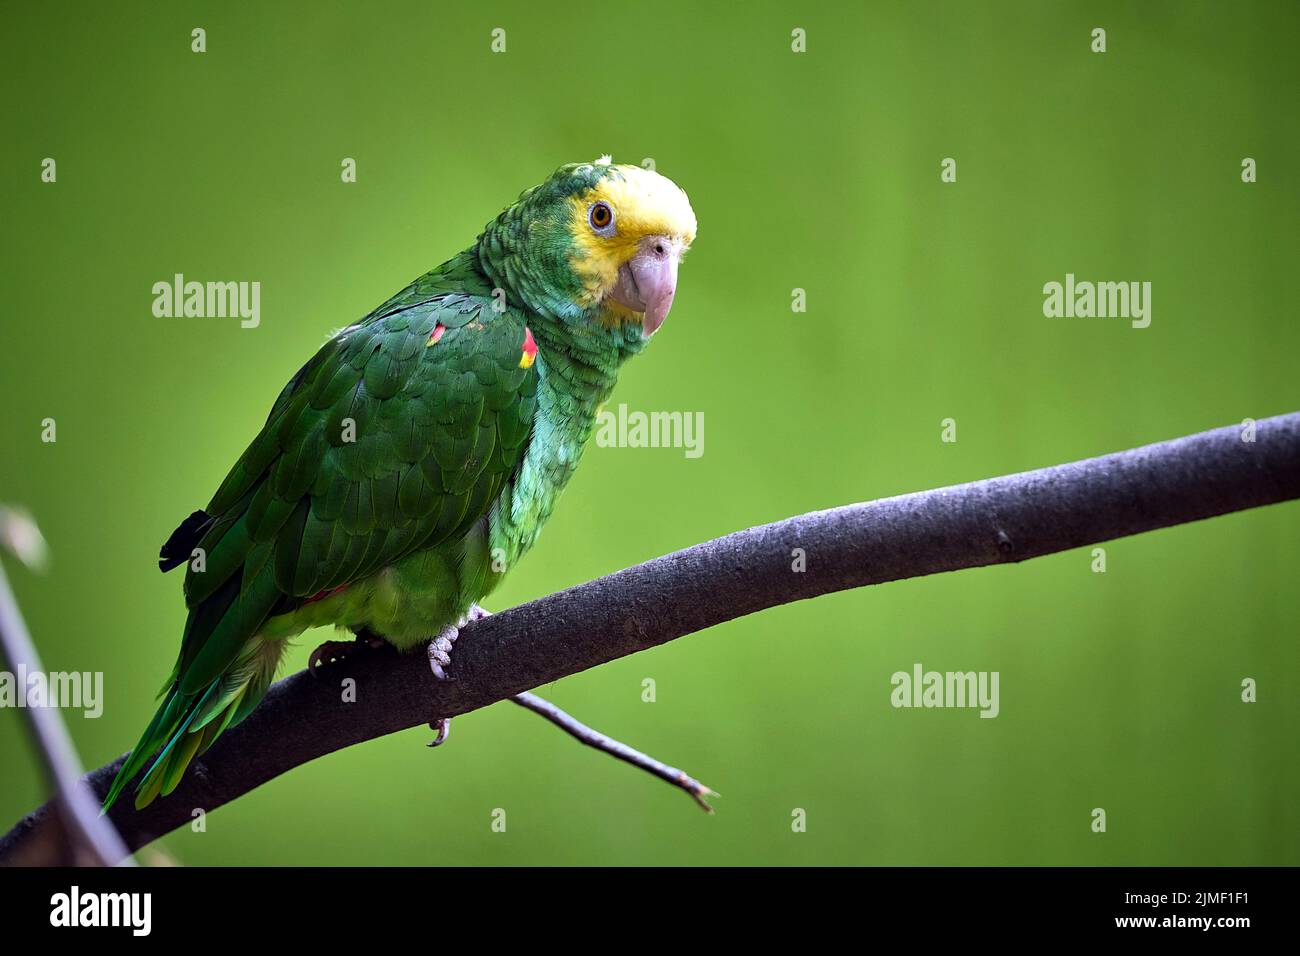 Yellow-headed Parrot (Amazona ochrocephala). Stock Photo